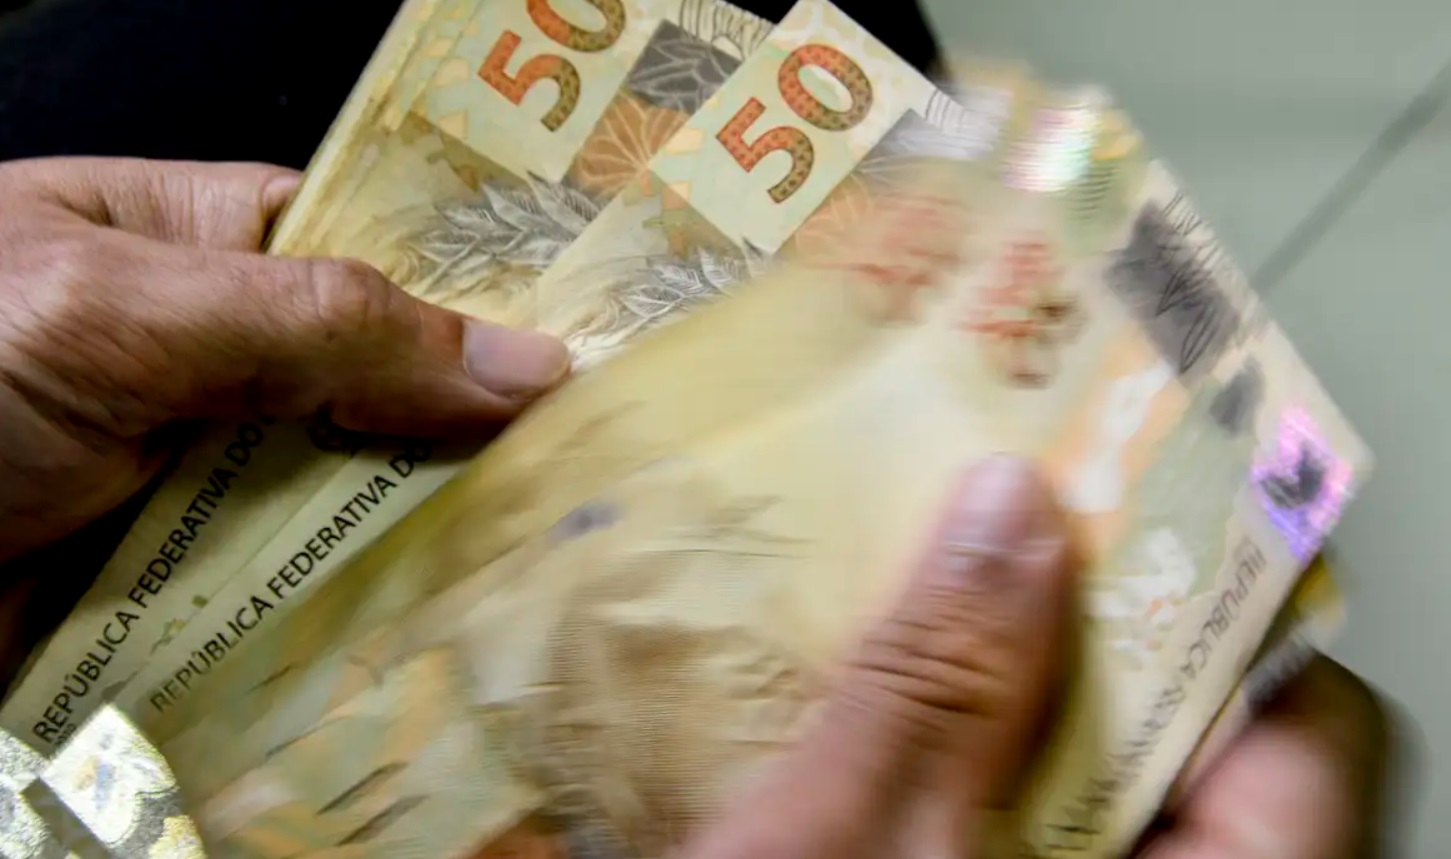 Governo propõe aumento do salário mínimo para R$ 1.502 em 2025